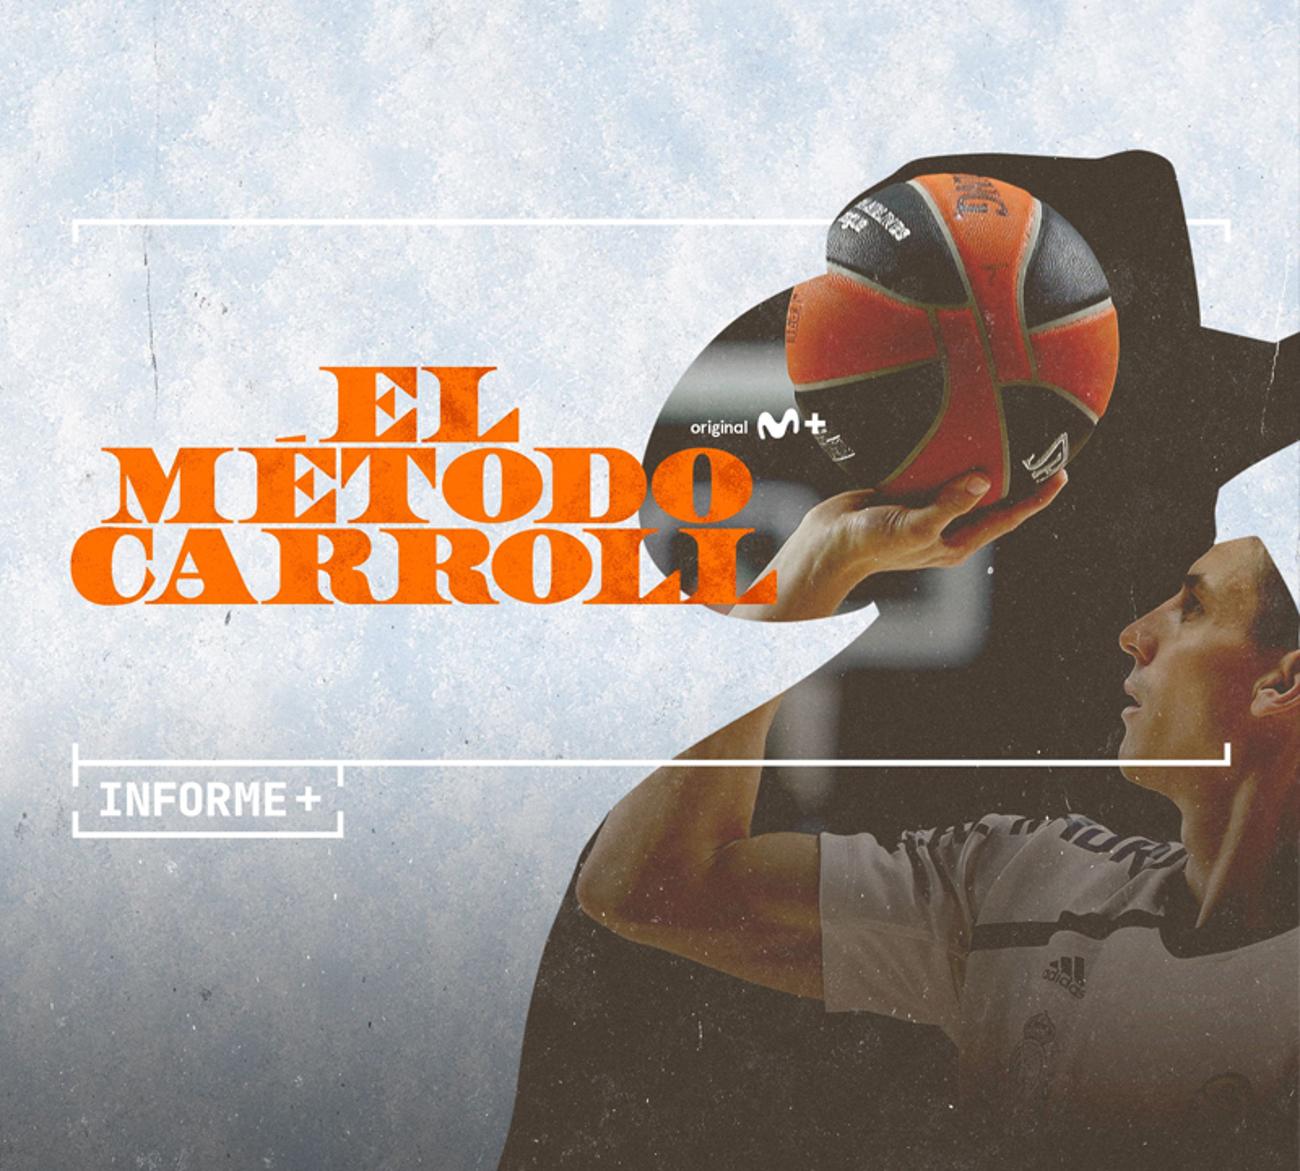 El Método Carroll: dentro de la vida de una leyenda del baloncesto